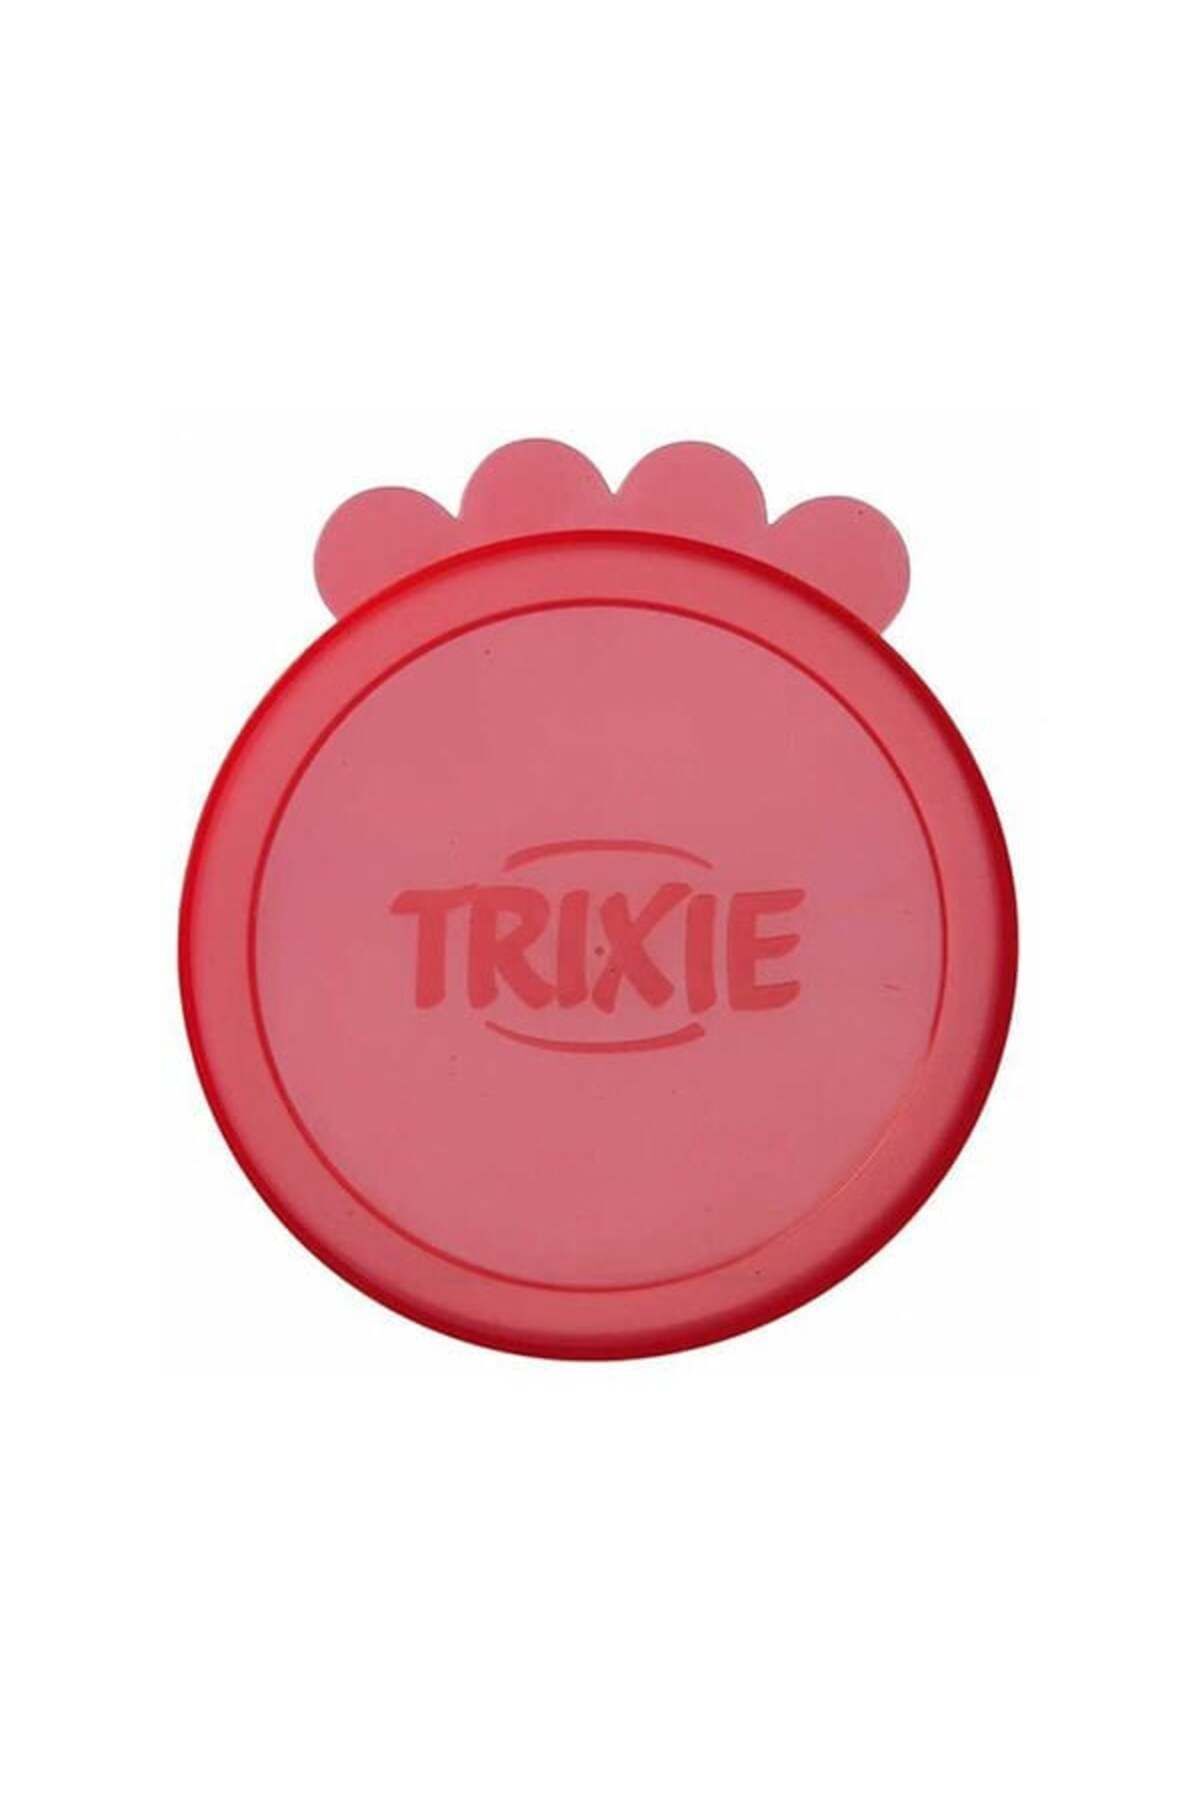 Trixie Konserve Kapağı 2 Adet 10.6 Cm - Tazemama Express